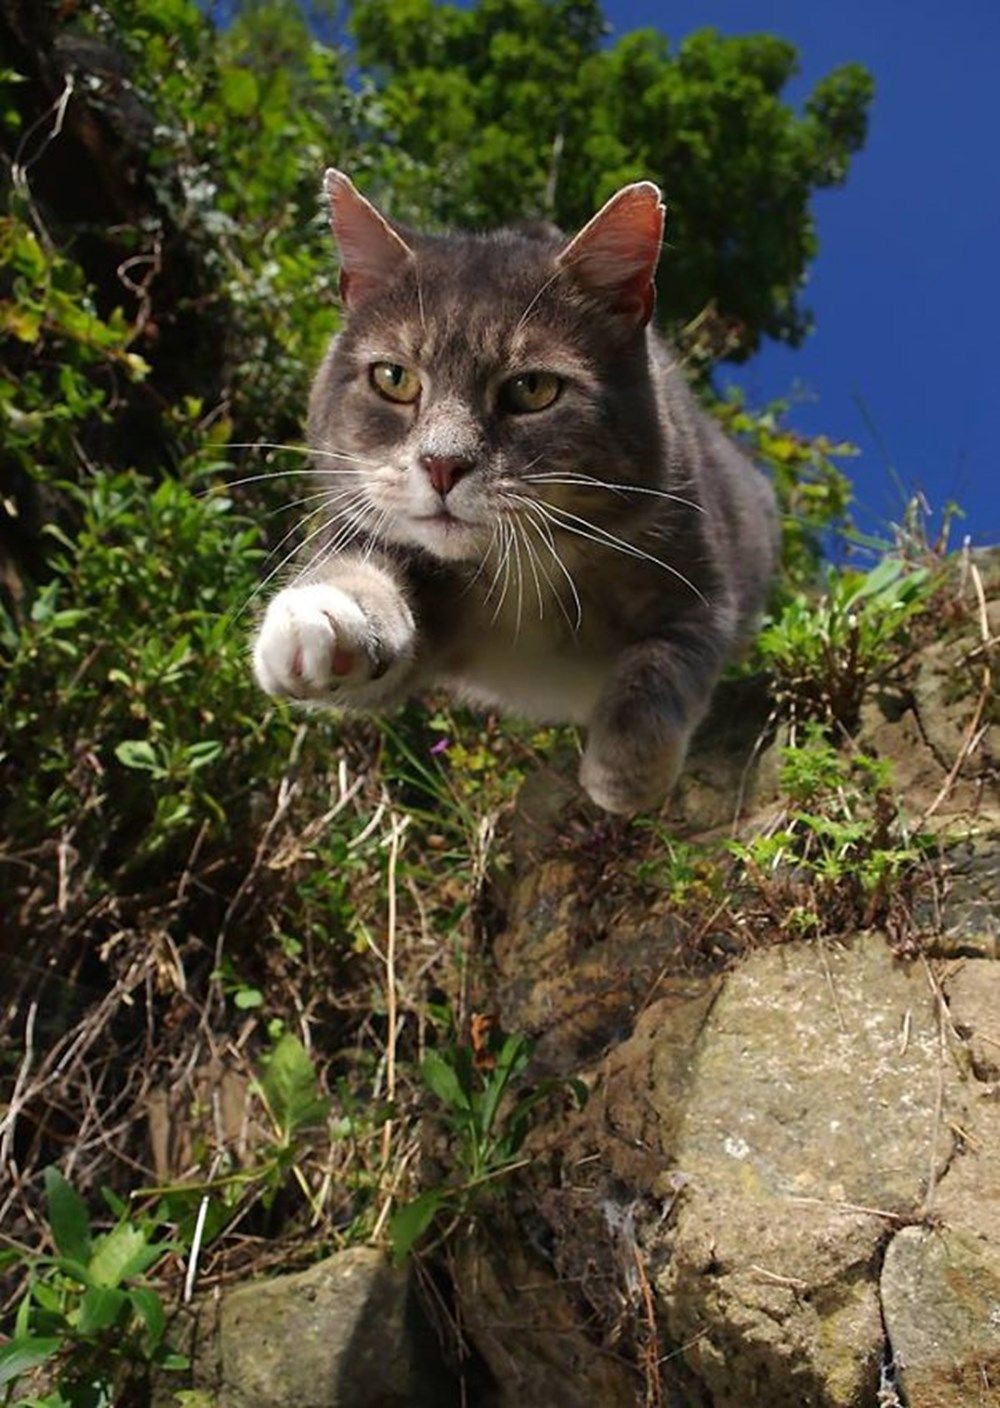 Dünya kediler günü :Mükemmel zamanlamayla çekilmiş kedi fotoğrafları! - Sayfa 1